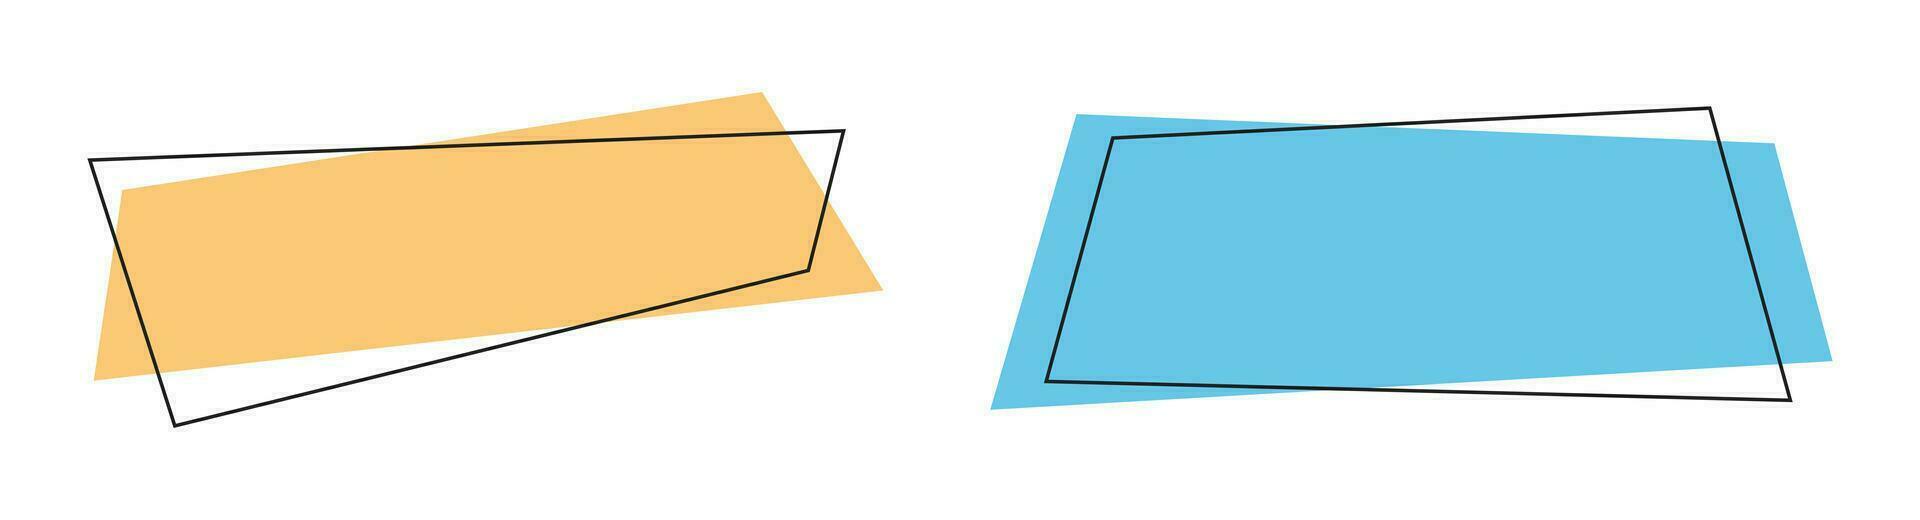 geométrico colori faixas dentro plano estilo vetor ilustração isolado em branco